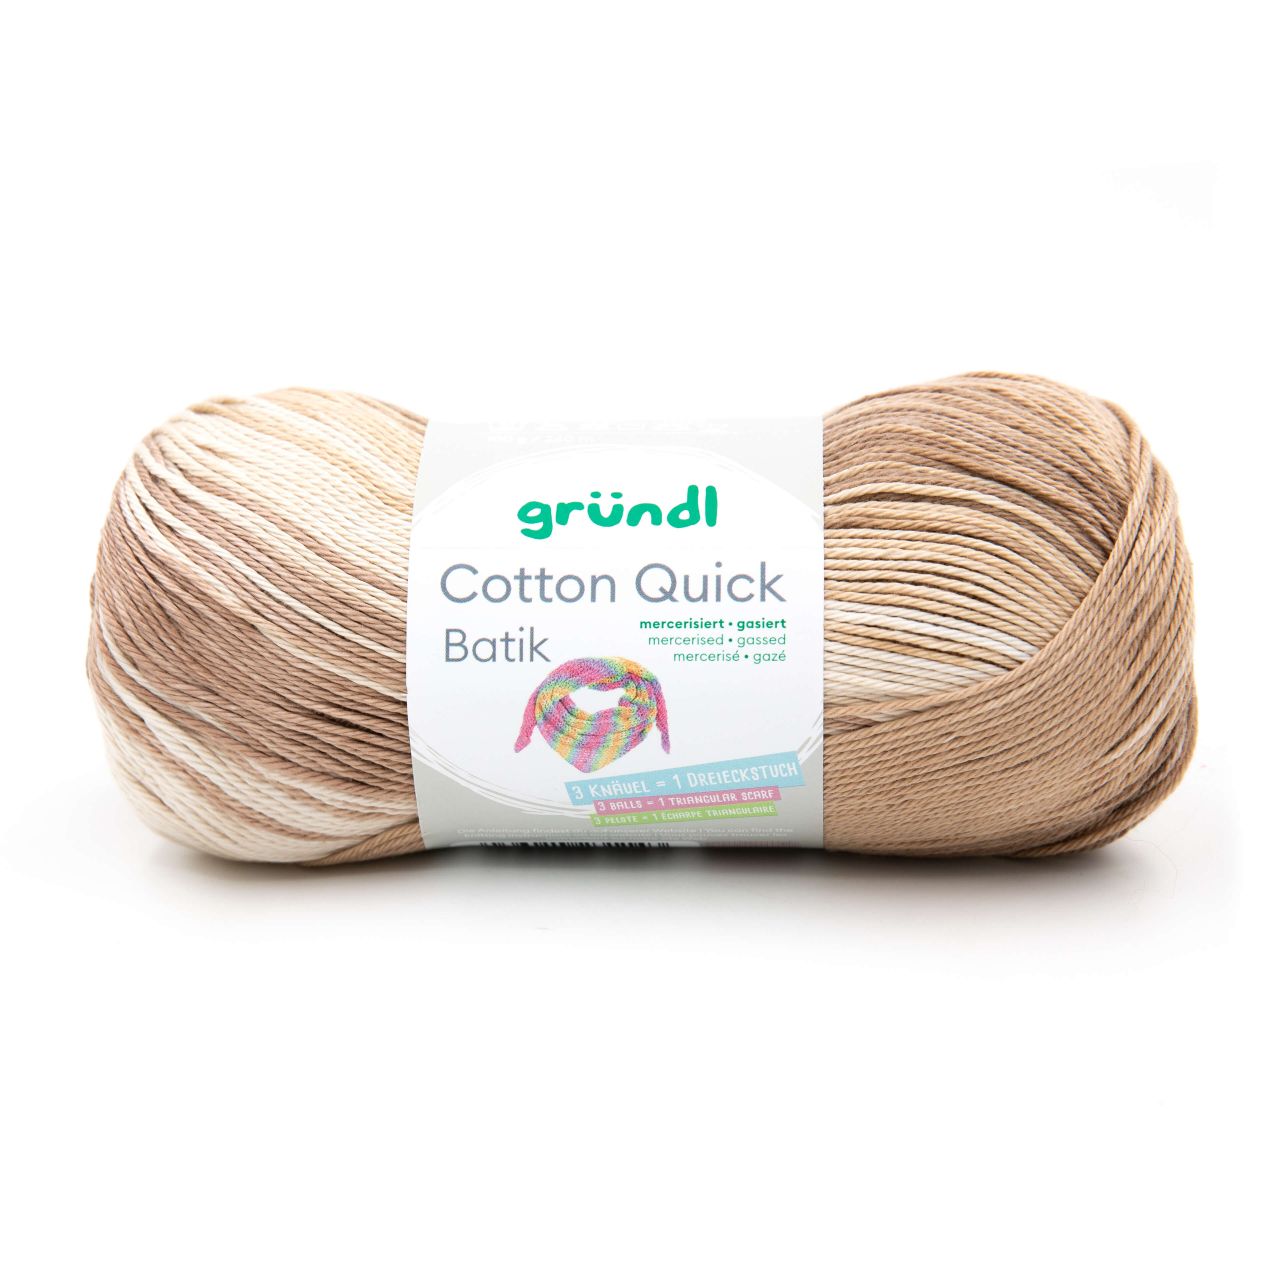 Gründl Wolle Cotton Quick Batik 100 g natur-braun-beige von gründl